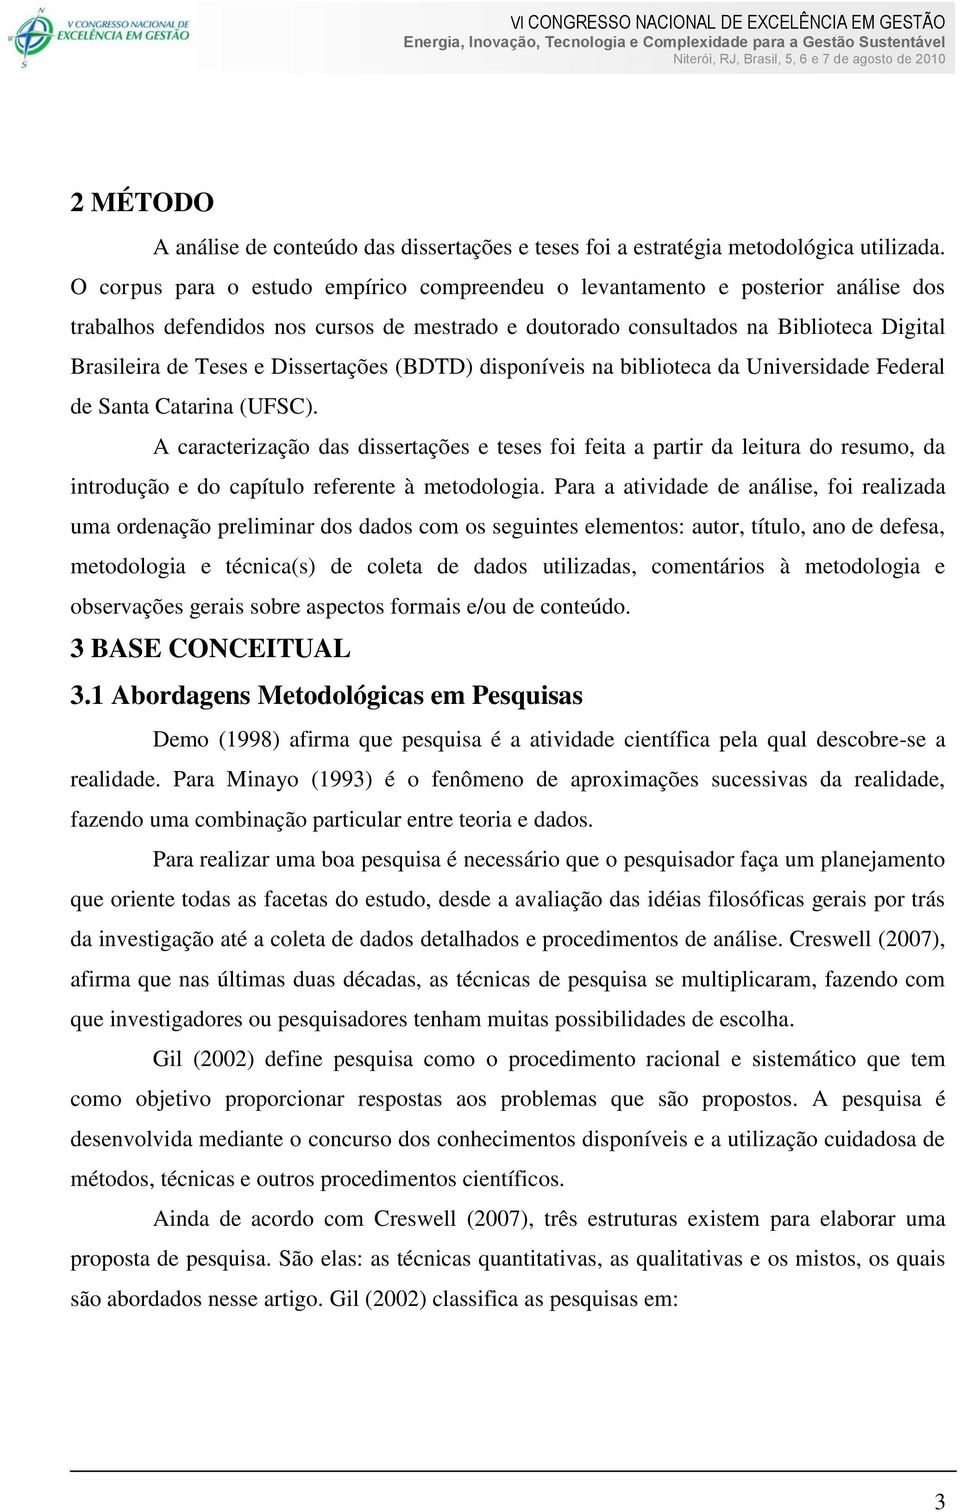 Dissertações (BDTD) disponíveis na biblioteca da Universidade Federal de Santa Catarina (UFSC).